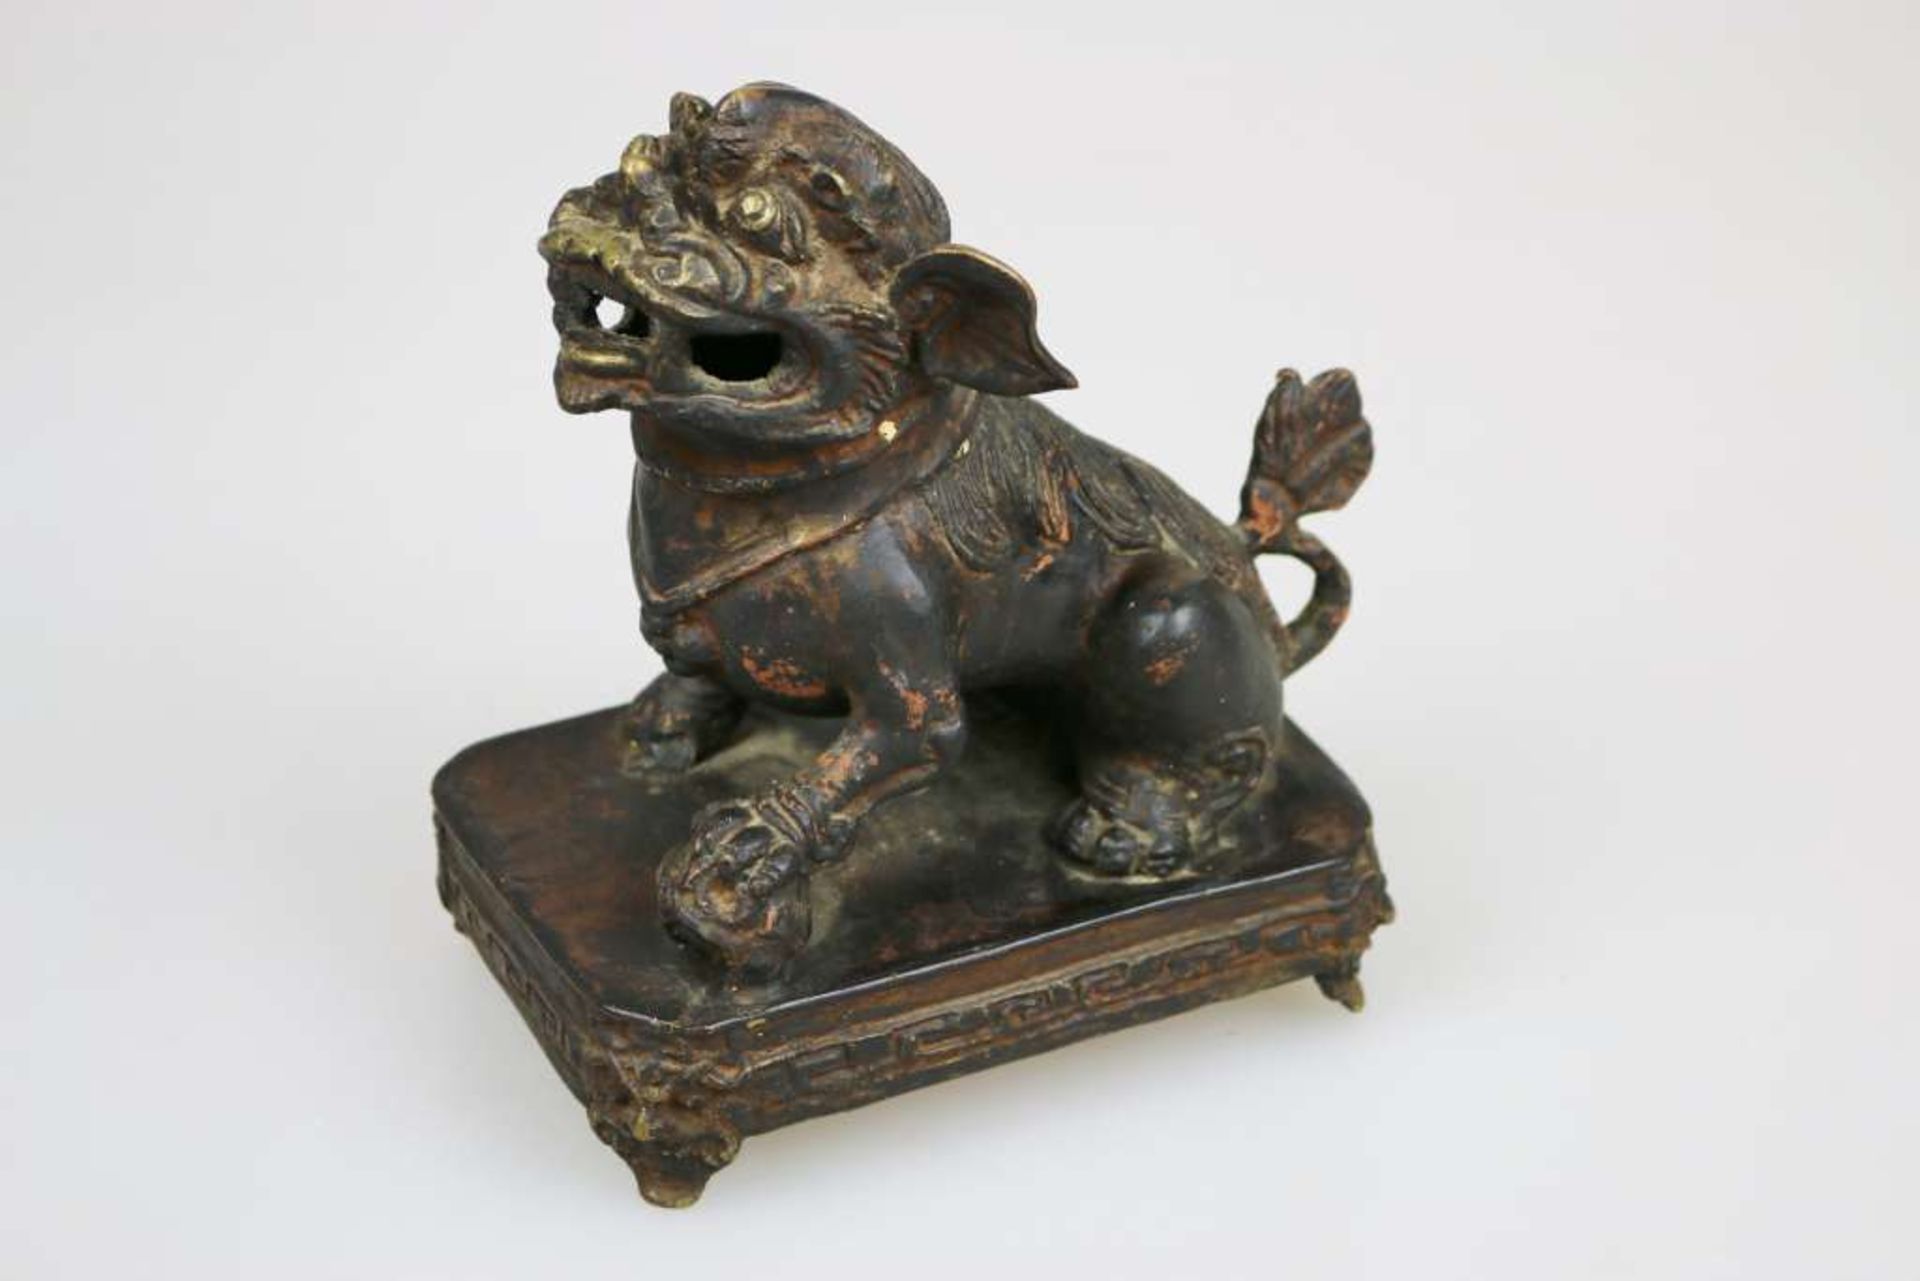 Fo Hund auf vierbeinigem Sockel, China/Tibet, 19./20. Jh., Metall, H. 19 cm, ALters- und